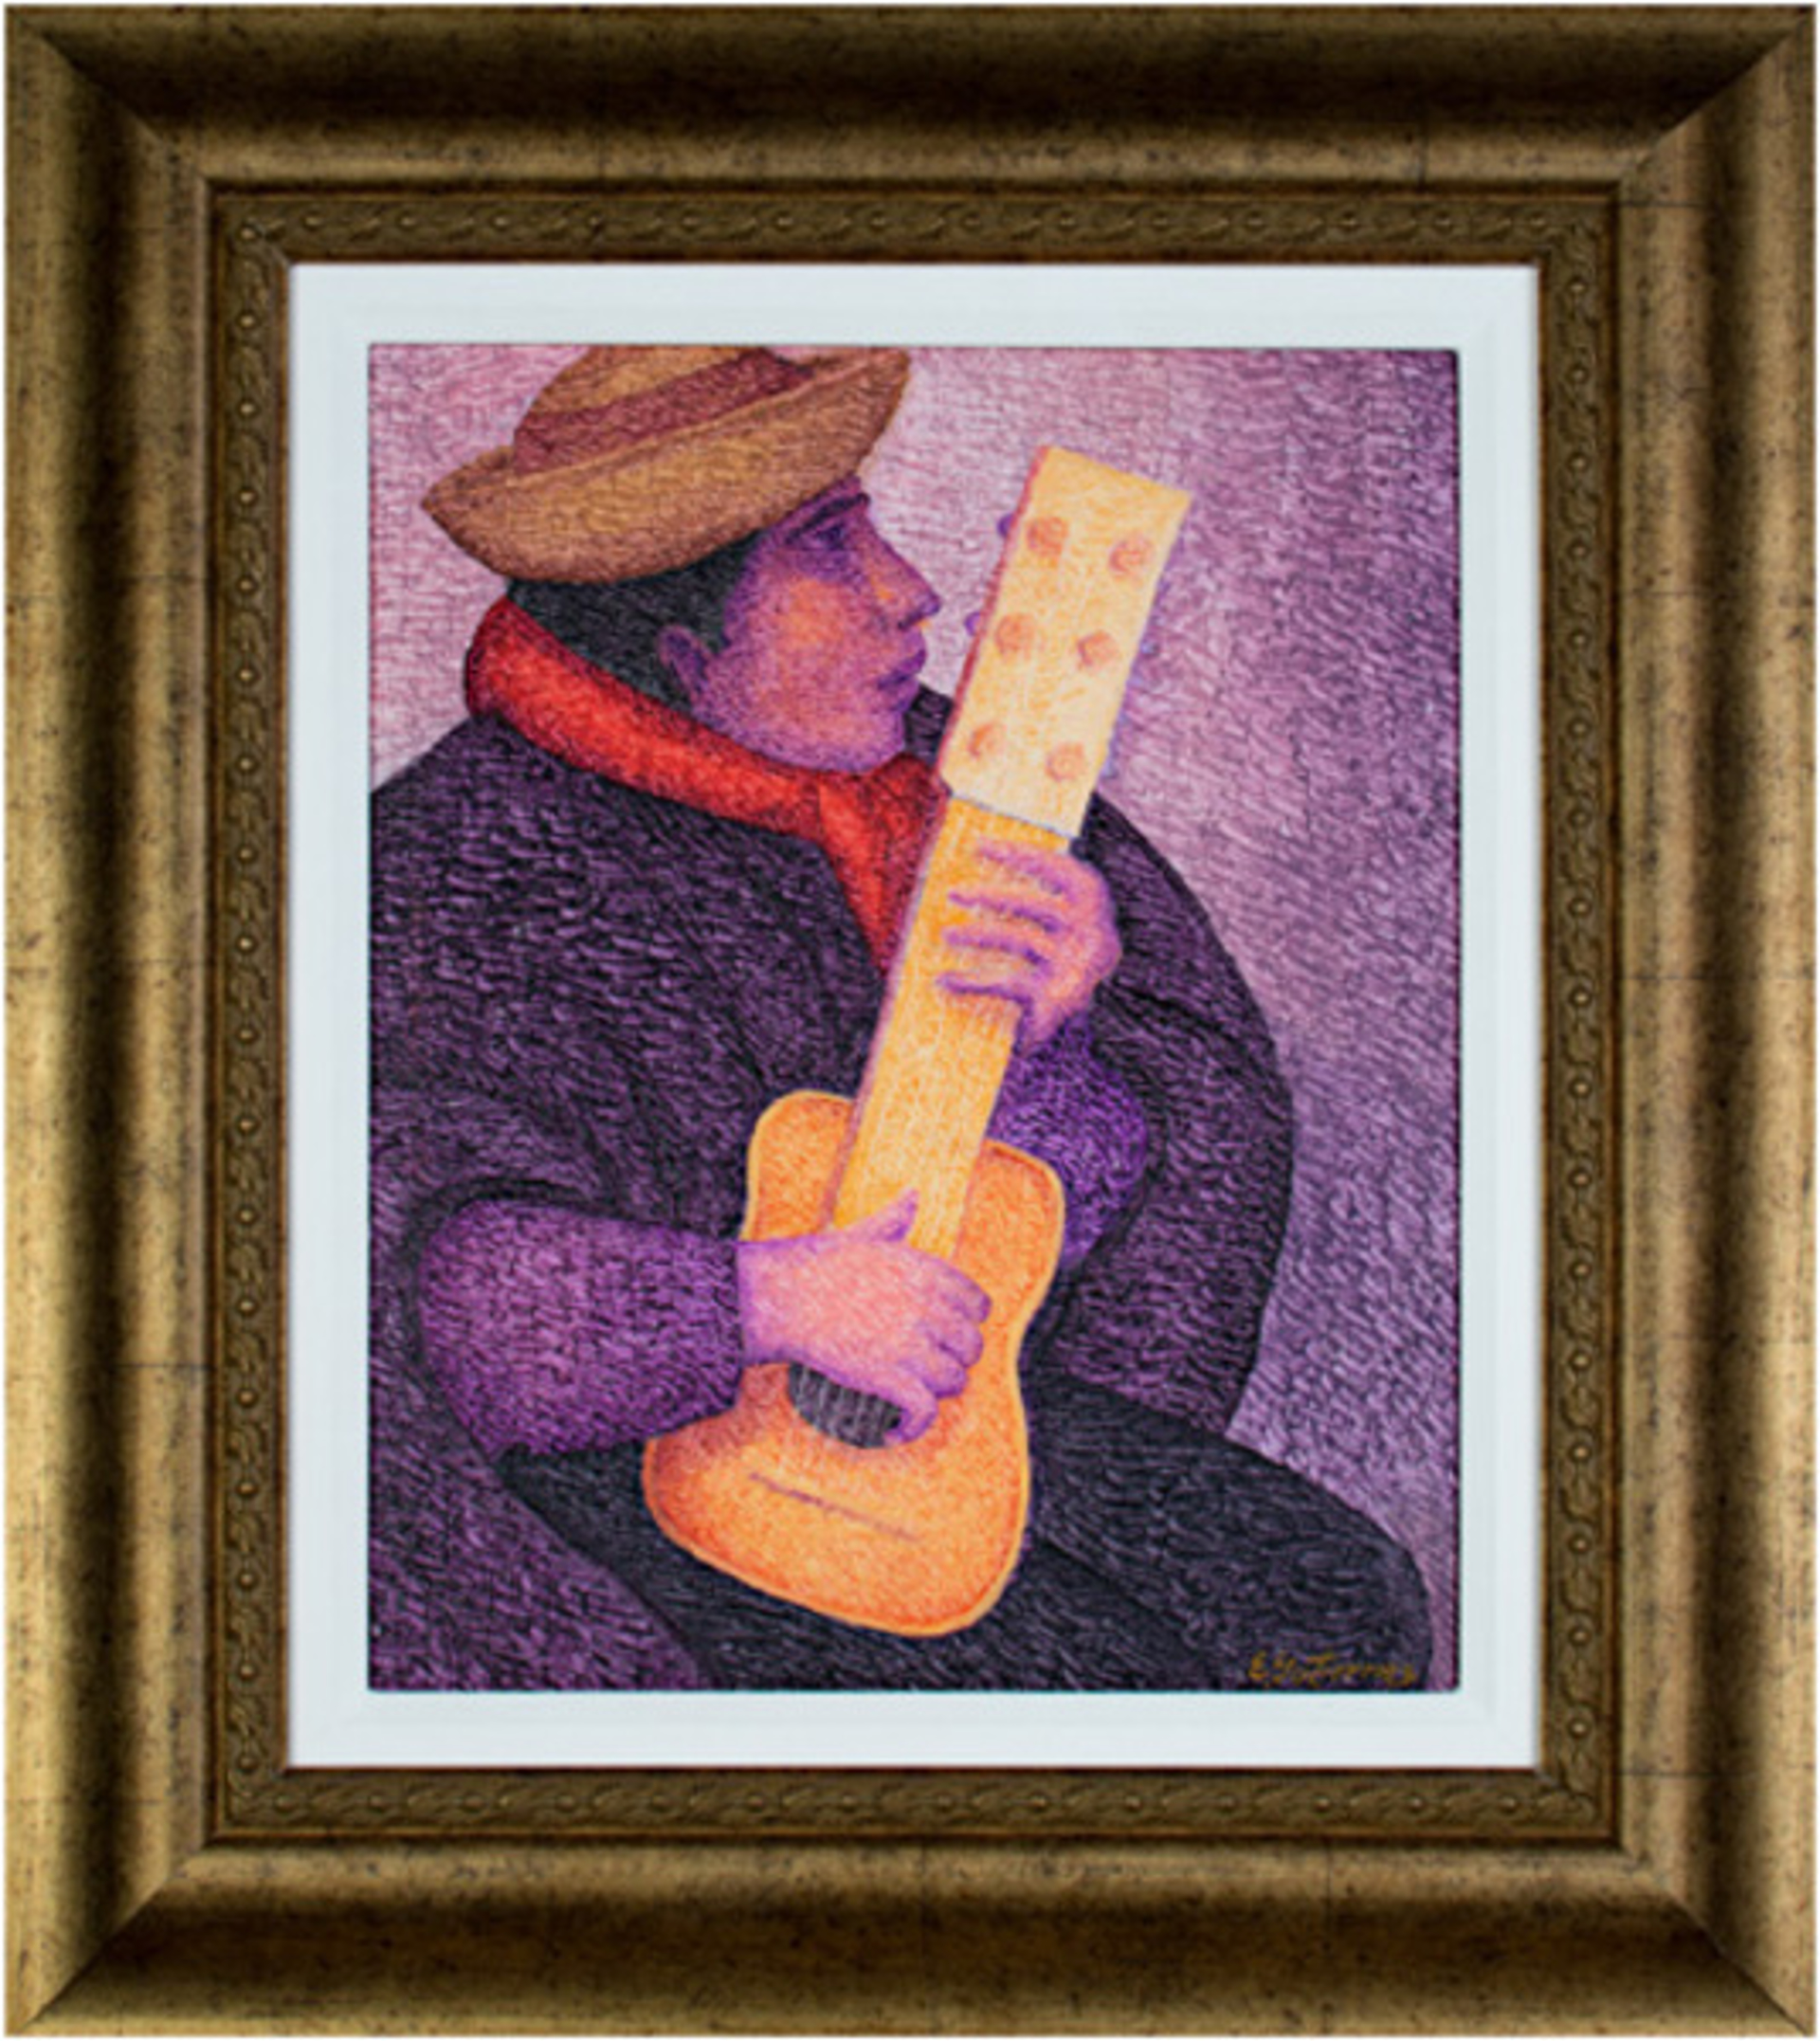 El Guitarrista by Ernesto Gutierrez